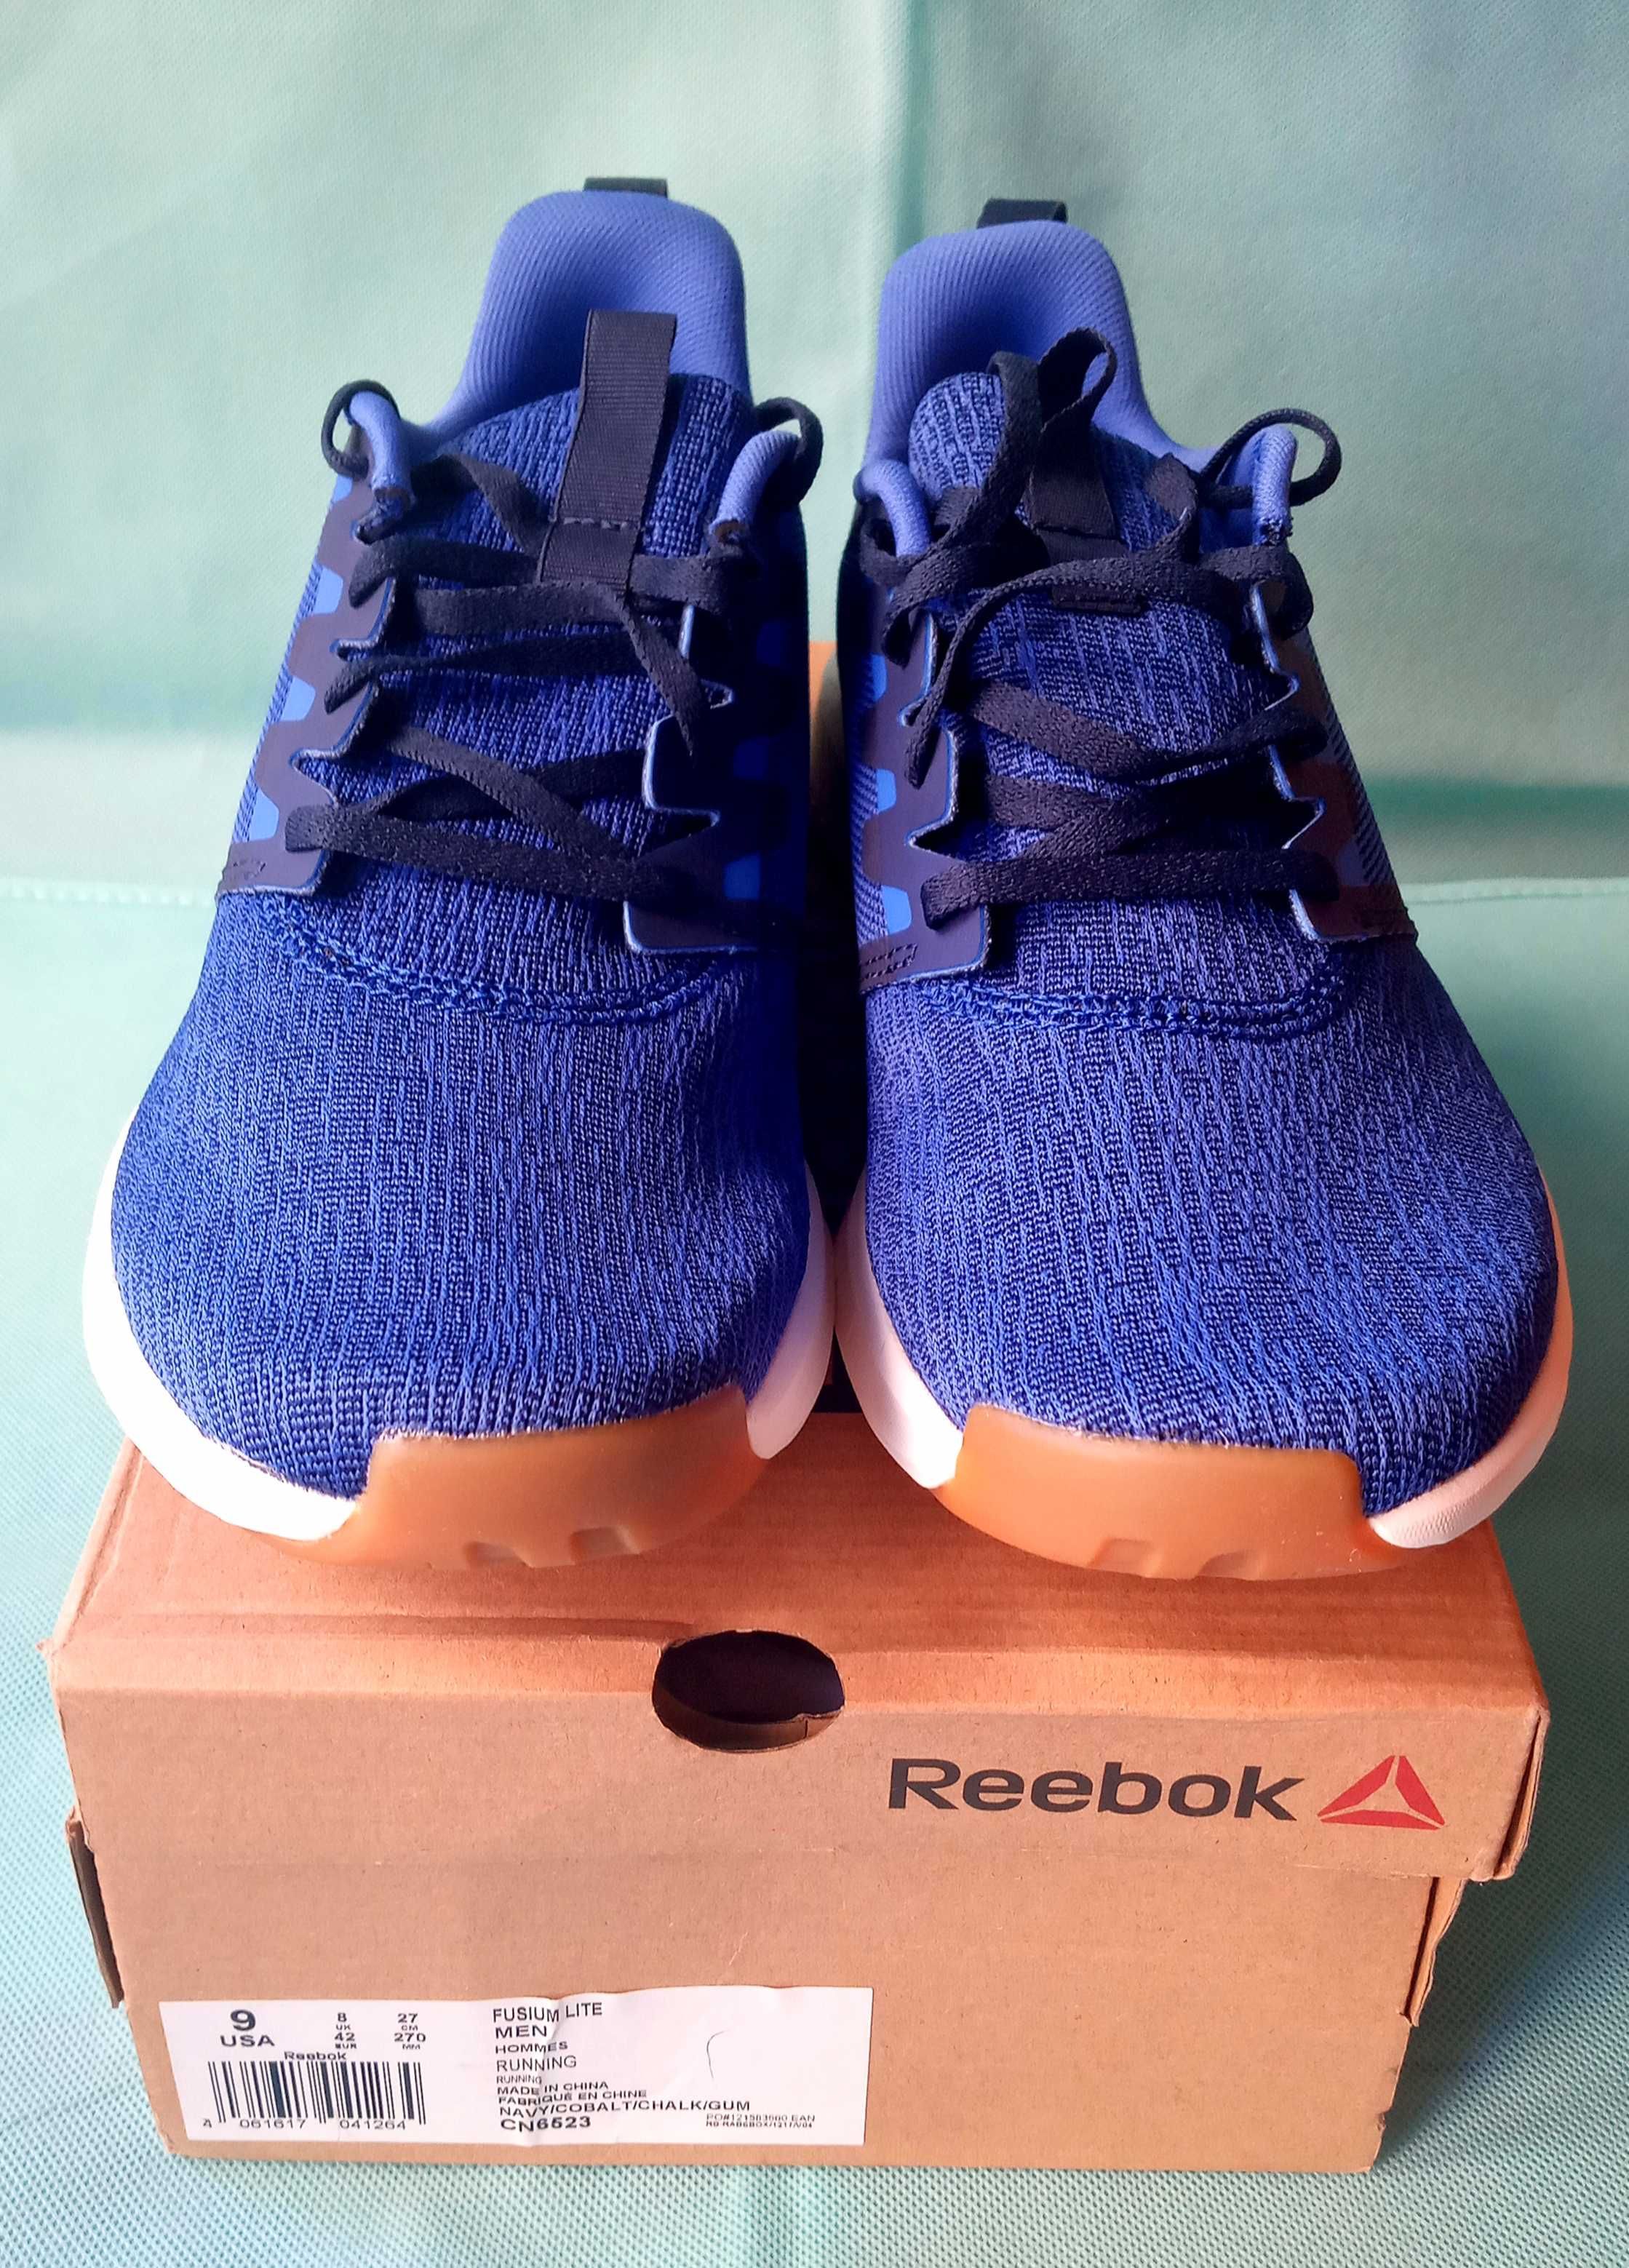 Reebok Fusium Lite мужские кроссовки  новые синие индиго 42размер